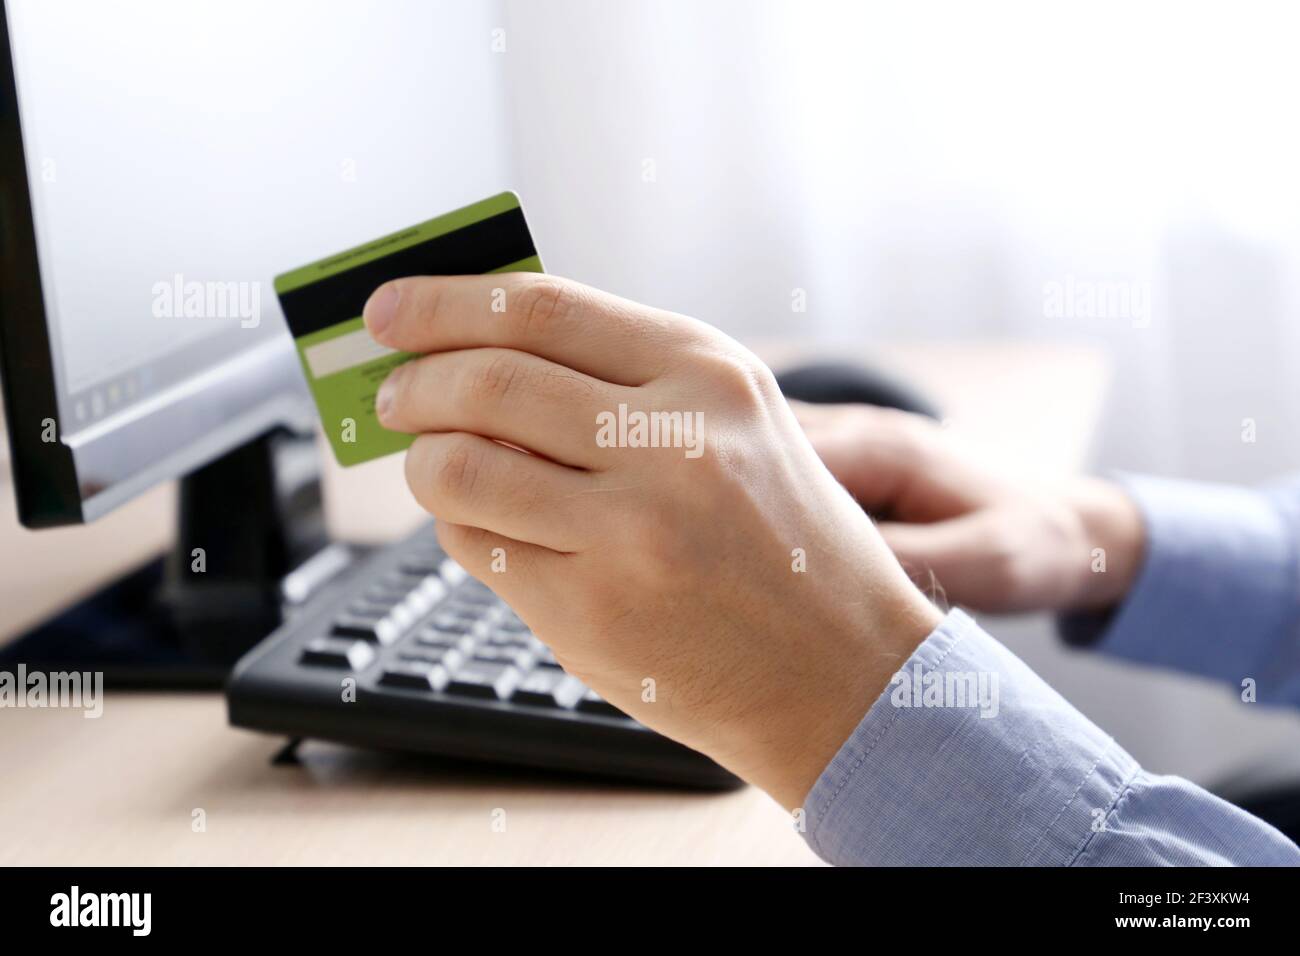 Hombre que sostiene tipos de tarjeta bancaria de crédito en el teclado del PC. Concepto de compra y pago en línea, transacción financiera Foto de stock